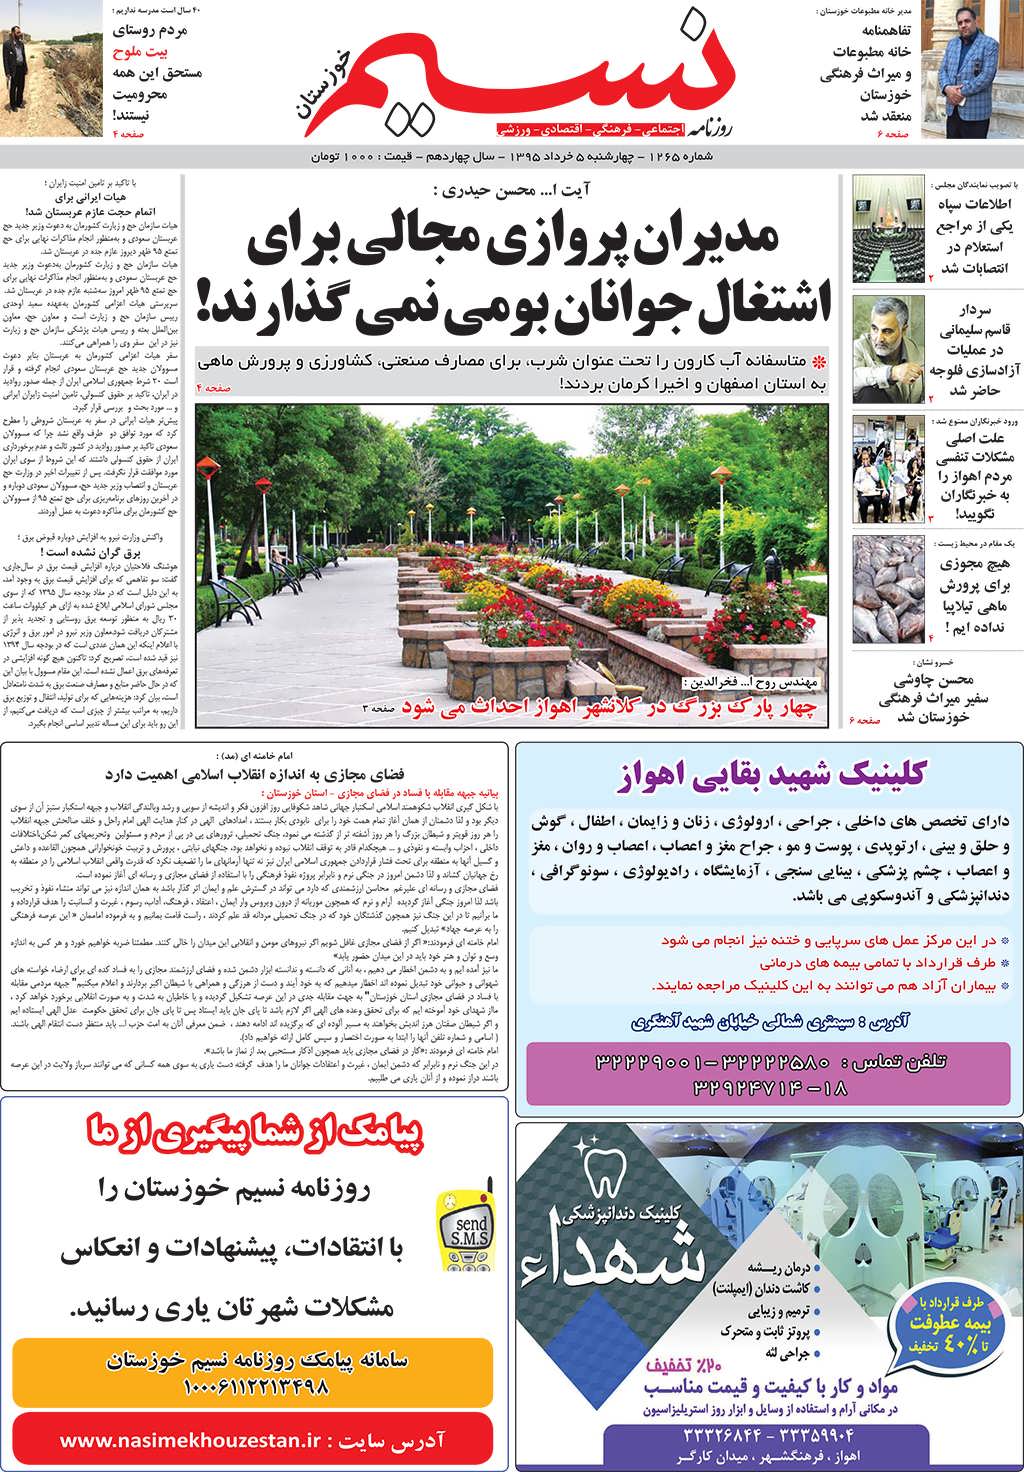 صفحه اصلی روزنامه نسیم شماره 1265